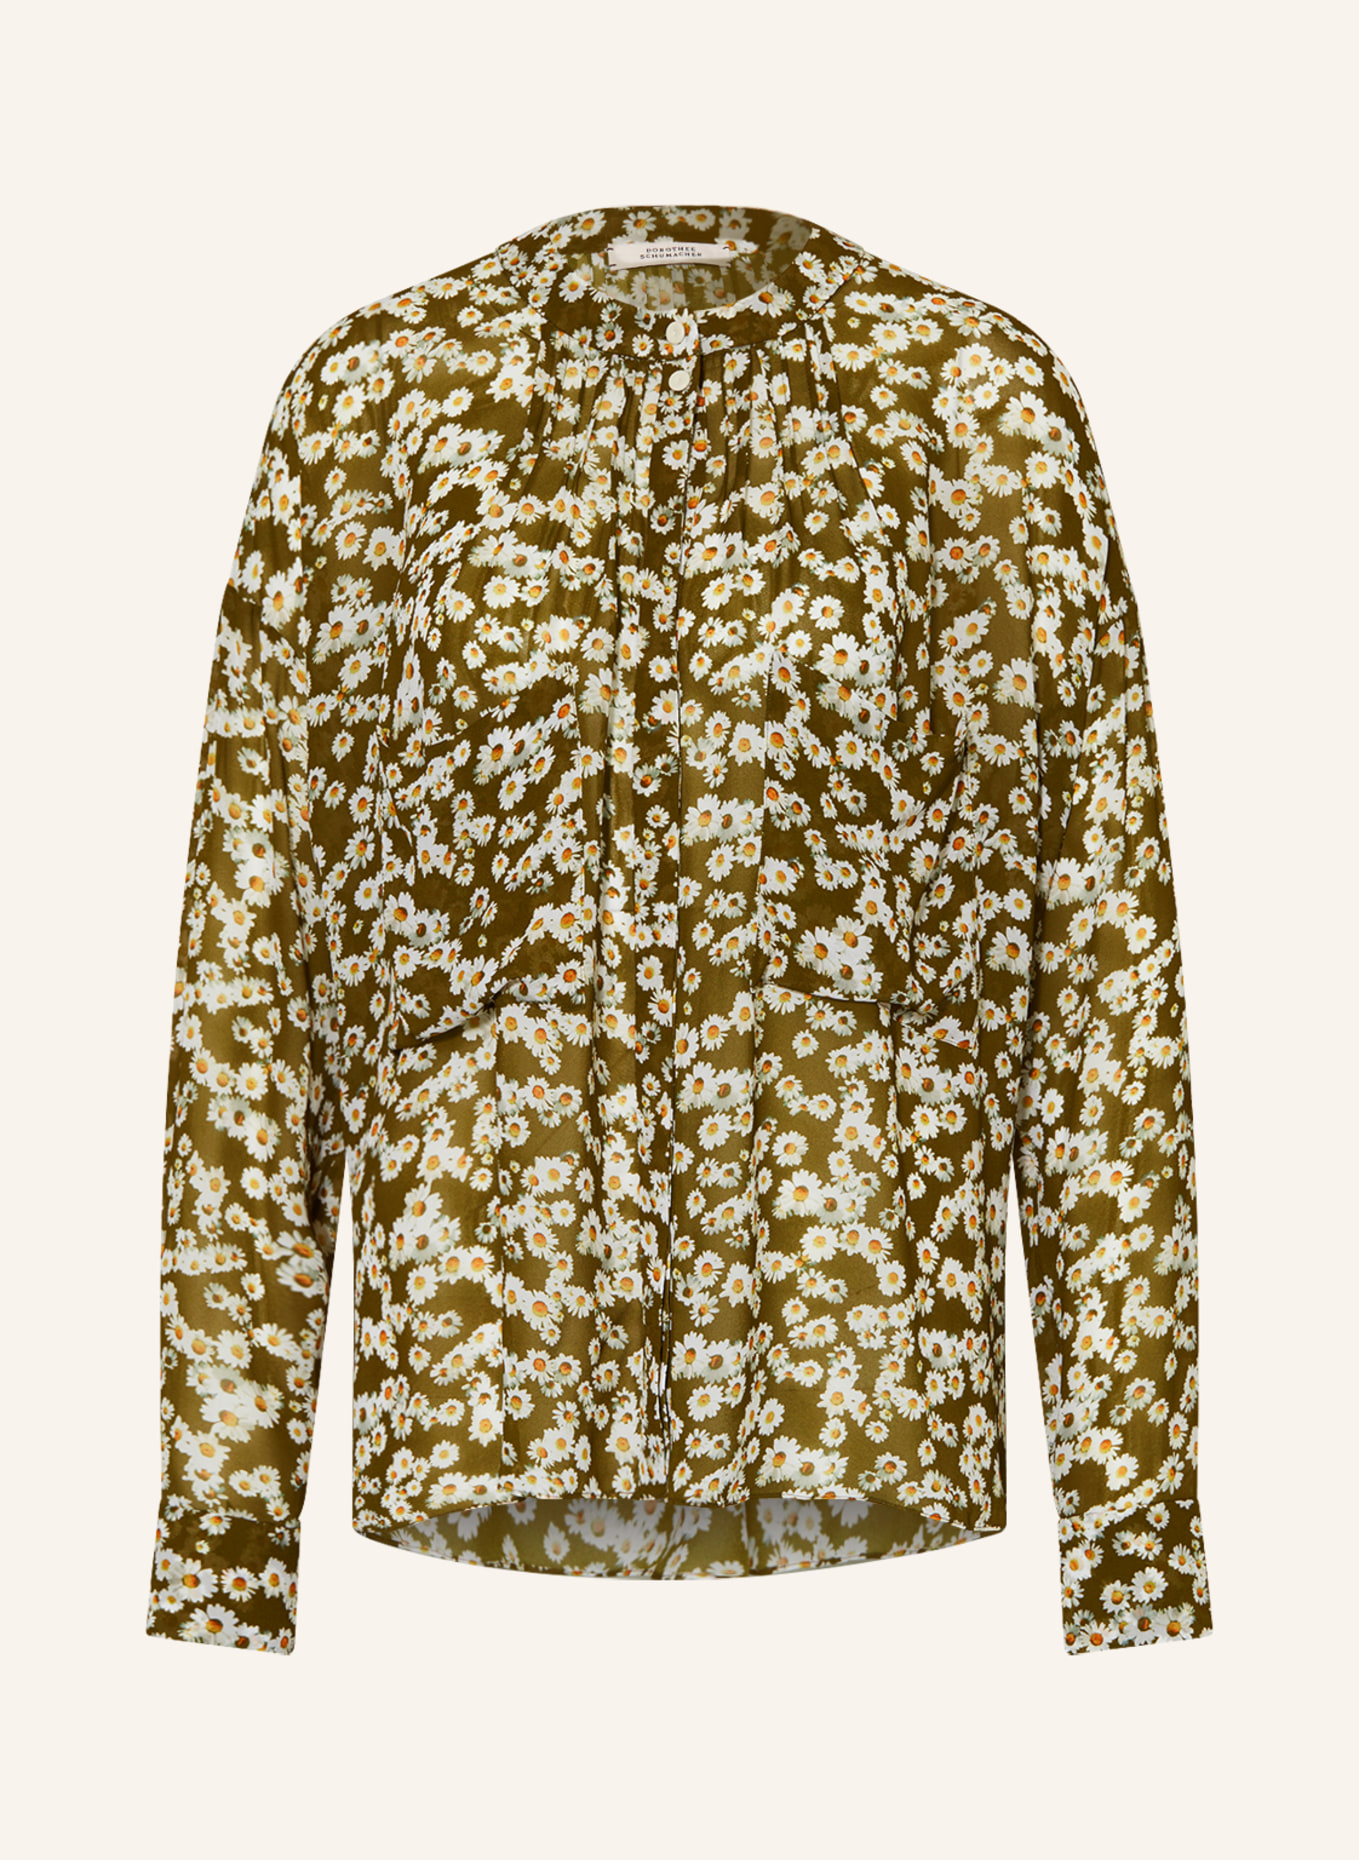 DOROTHEE SCHUMACHER Bluse, Farbe: OLIV/ DUNKELGELB/ WEISS (Bild 1)